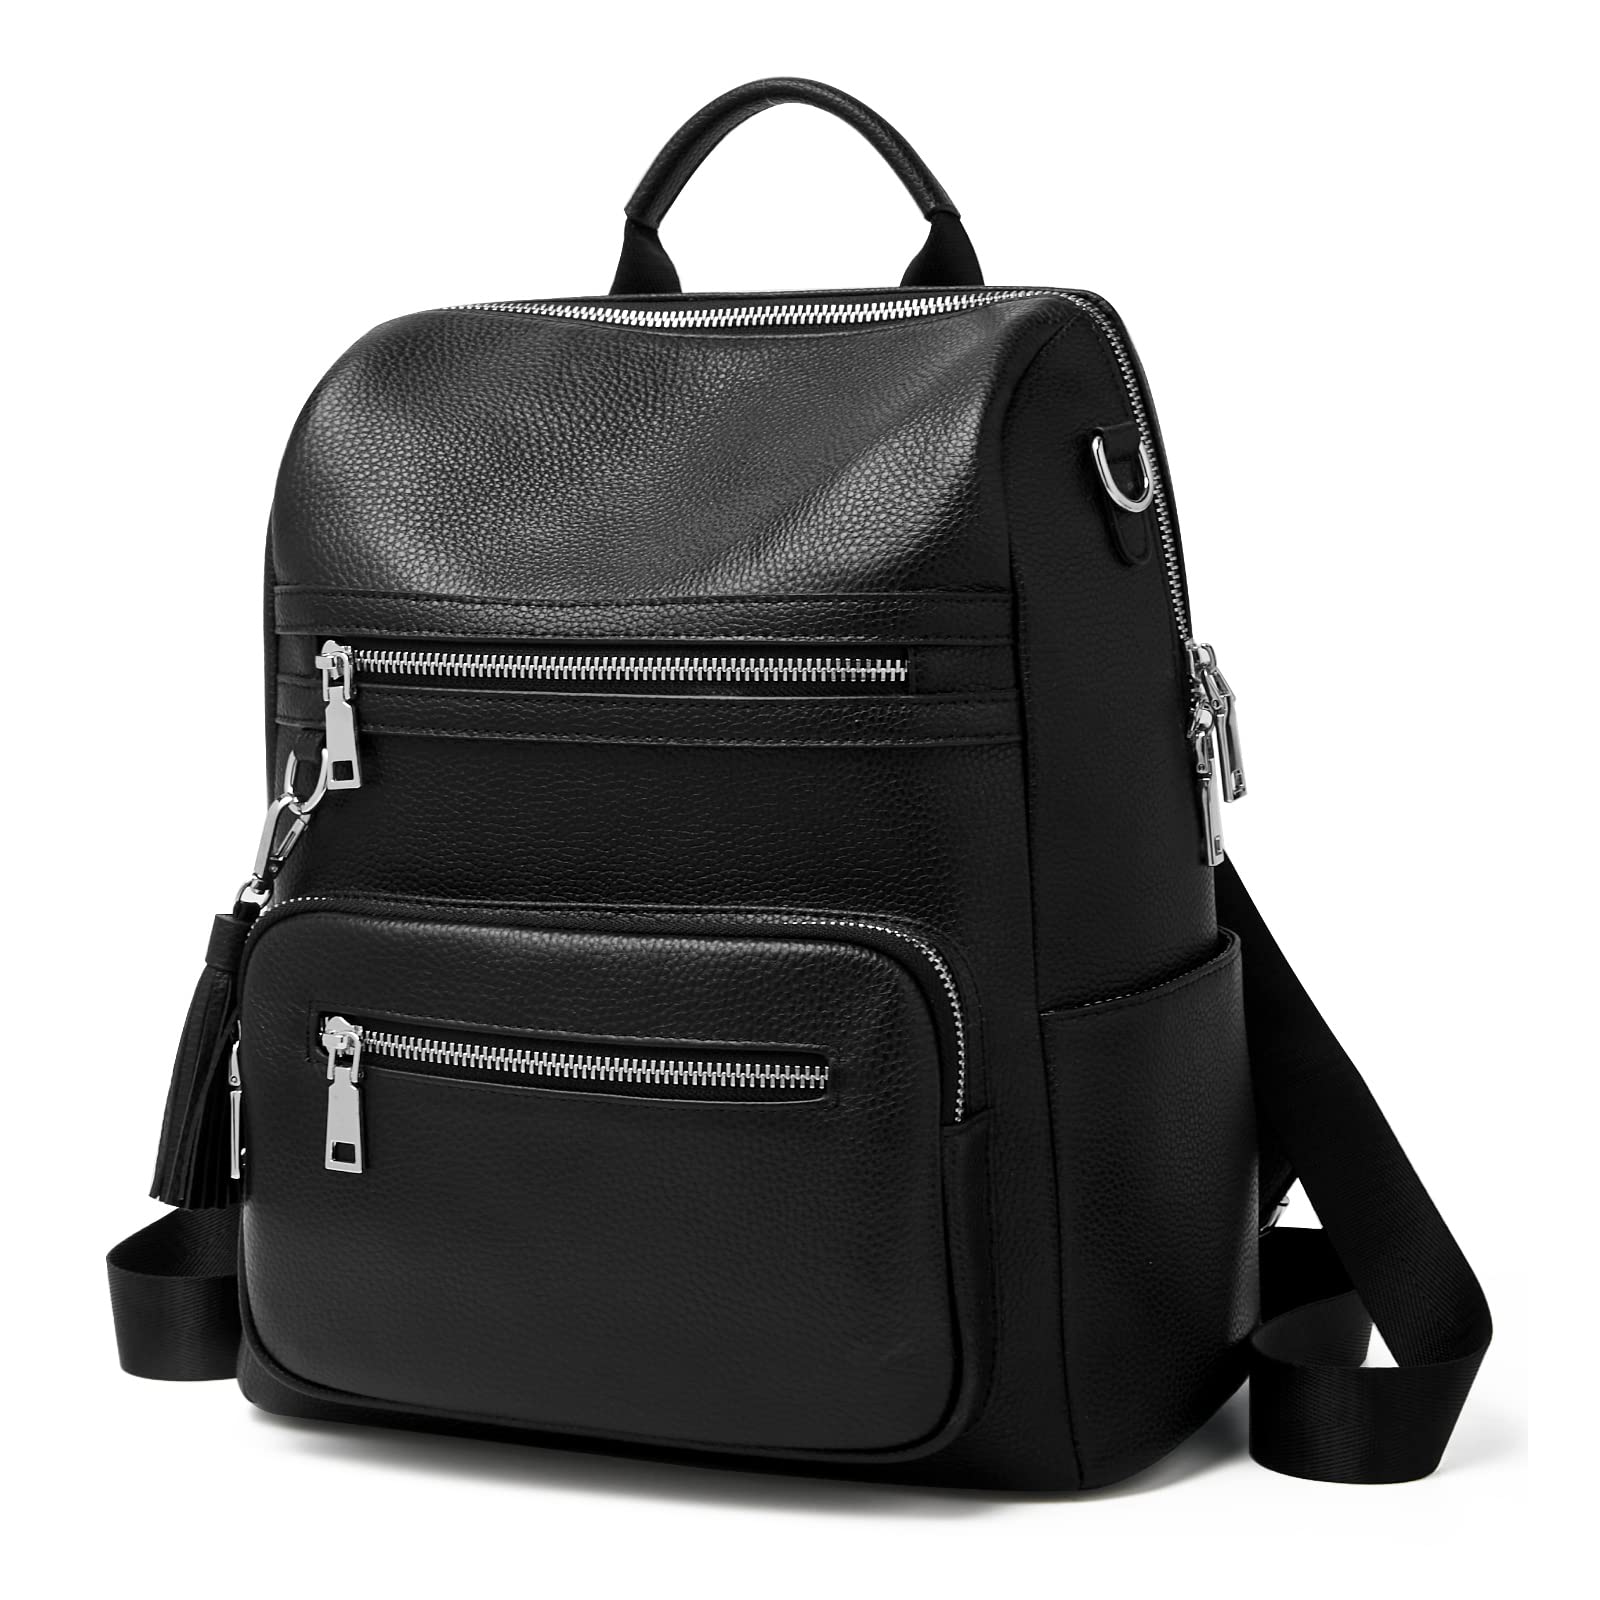 Mens Leather Messenger Bag Briefcase Satchel Tablet Ipad Next - Etsy |  Leather messenger bag men, Laptop bag for women, Leather laptop bag